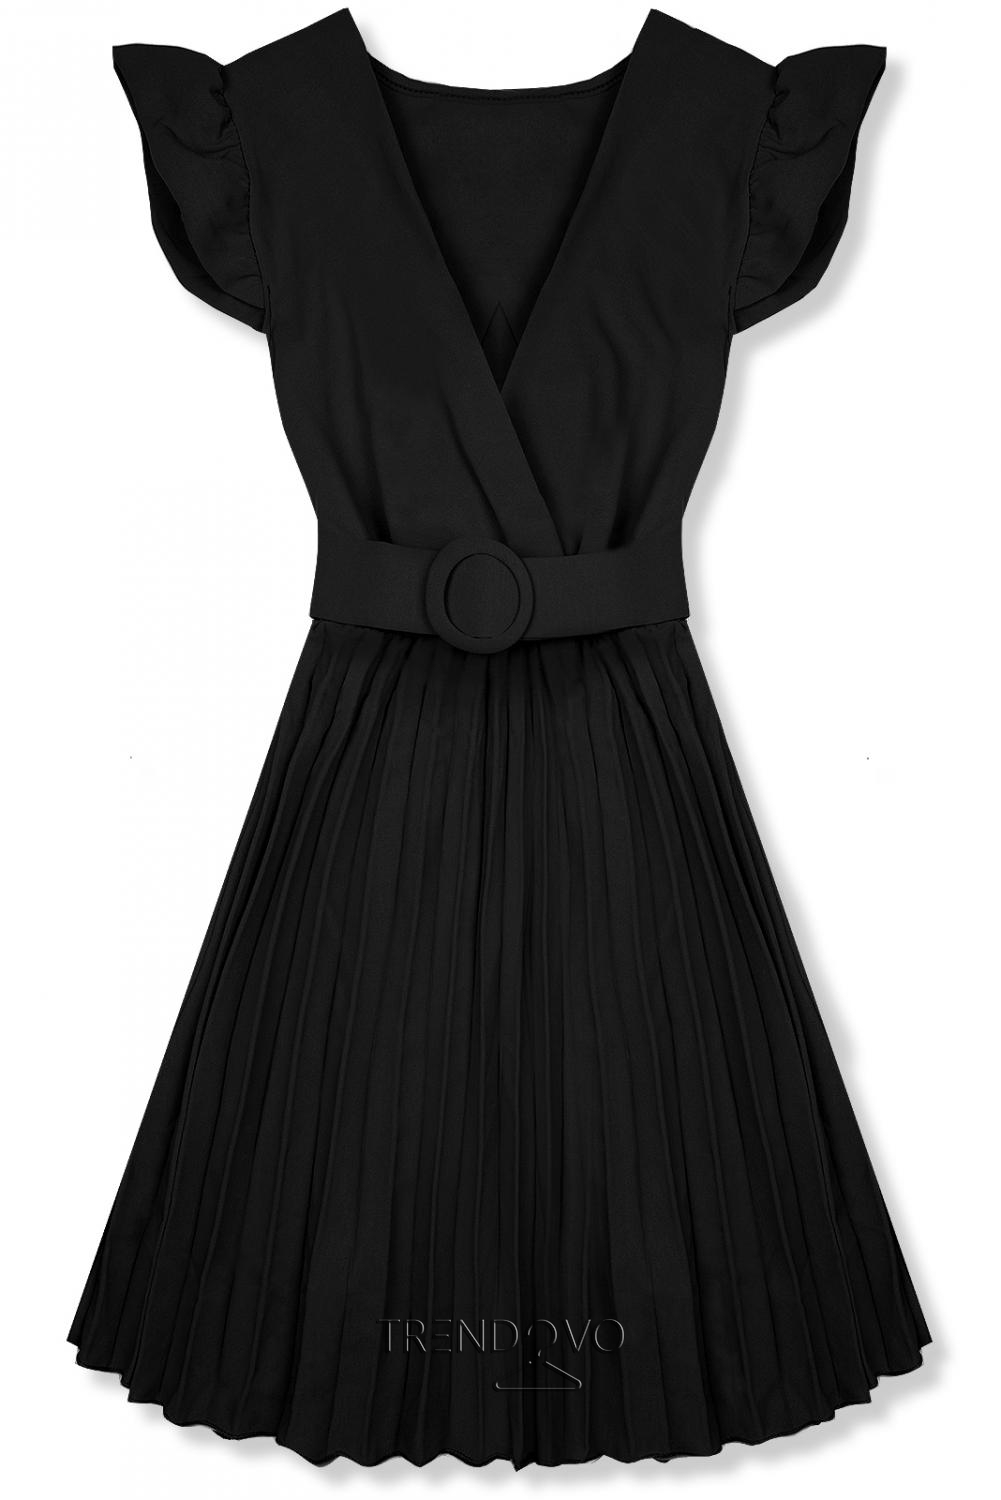 Černé šaty se skládanou sukní